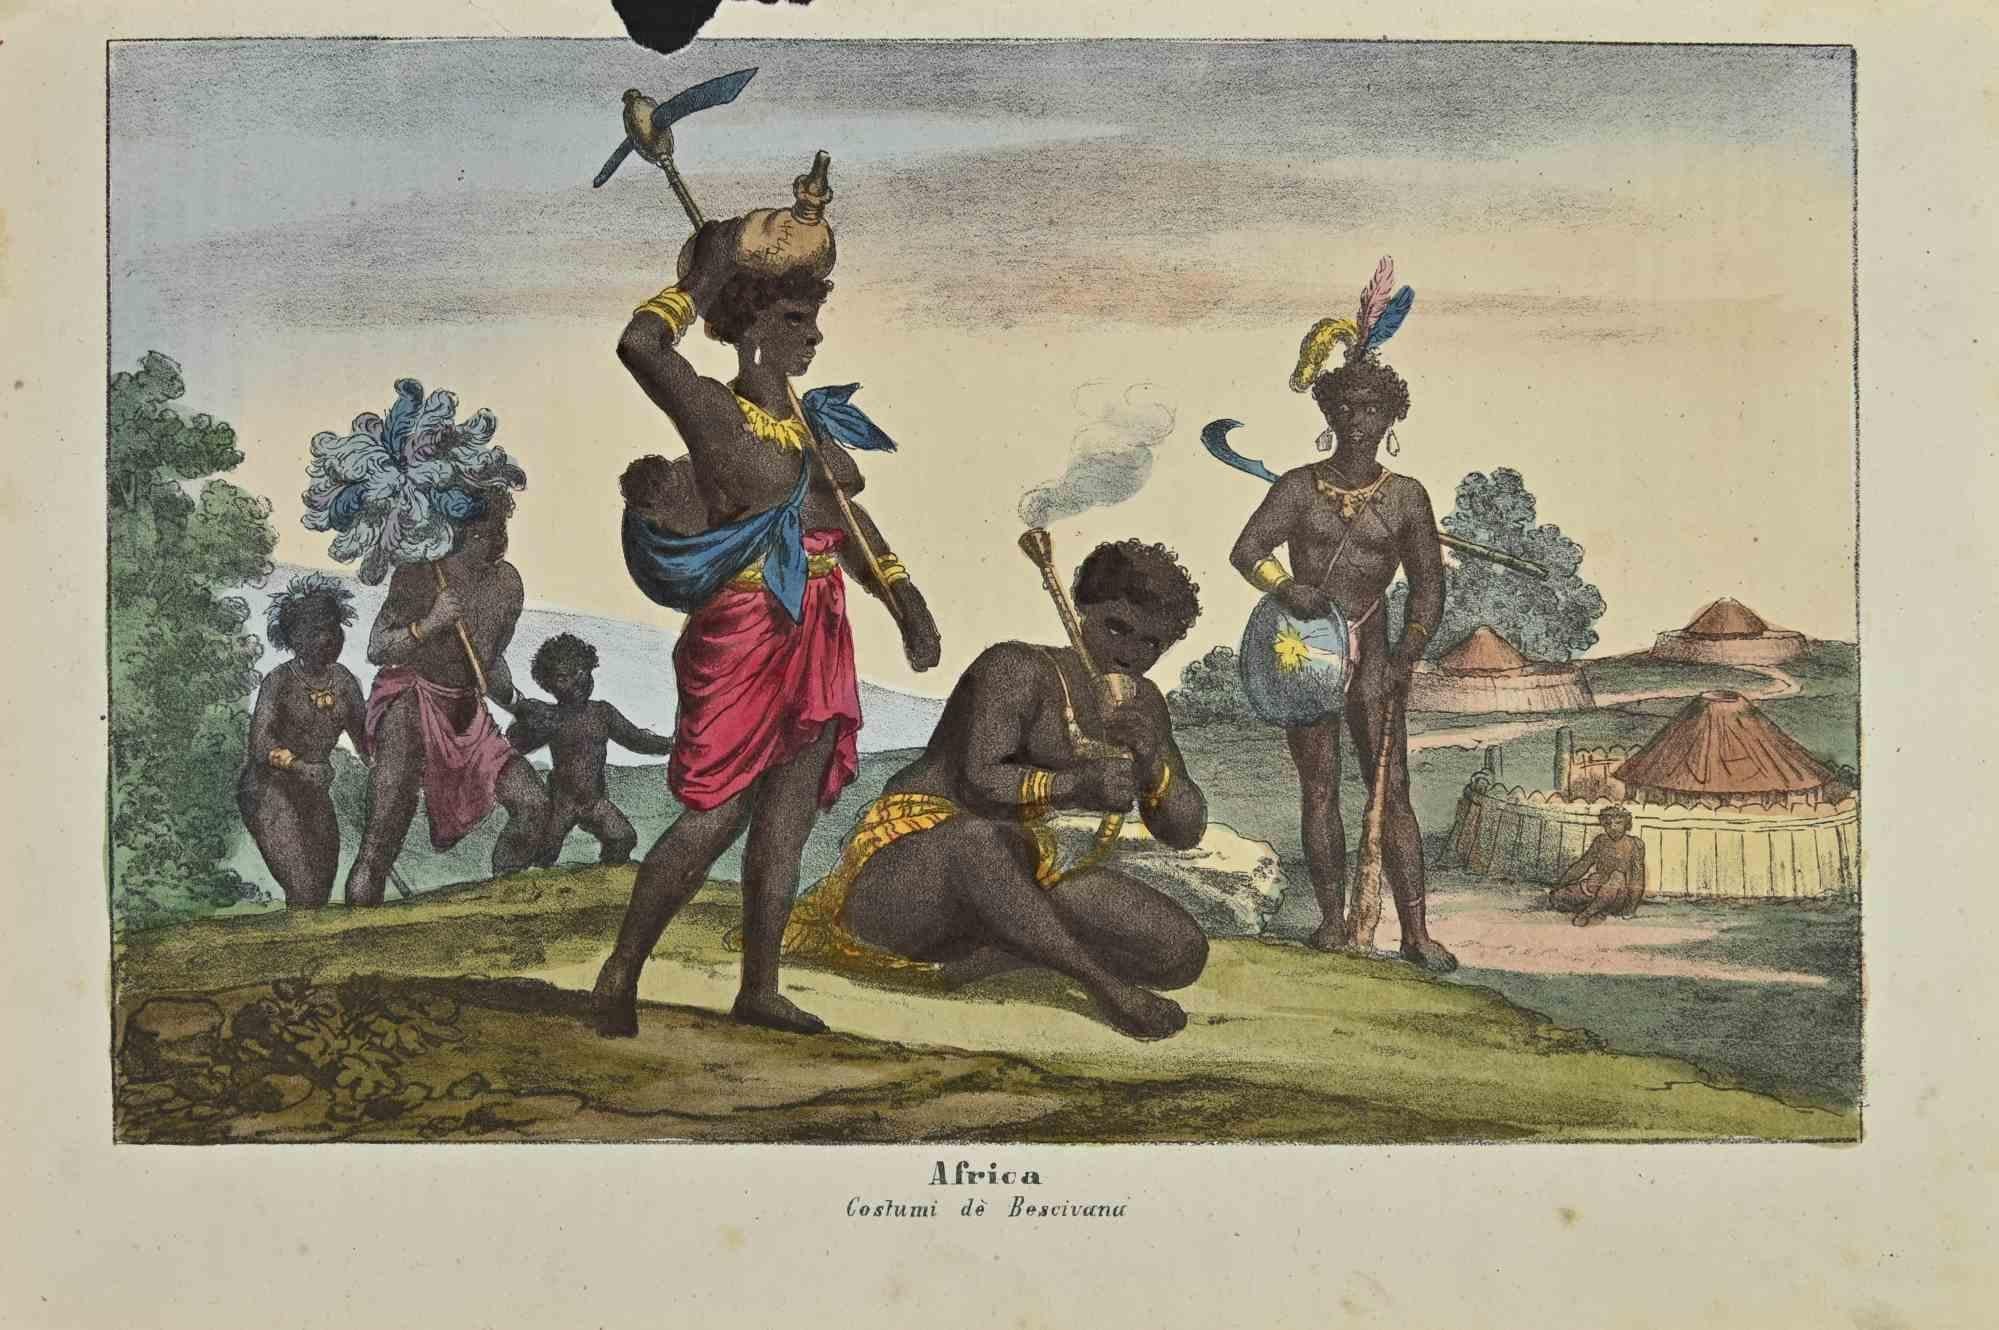 Ancient African Customs ist eine Lithographie von Auguste Wahlen aus dem Jahr 1844.

Handgefärbt.

Guter Zustand.

Im Zentrum des Kunstwerks steht der Originaltitel "Africa" und der Untertitel "Costumi dè Bescivana". 

Das Werk ist Teil der Suite